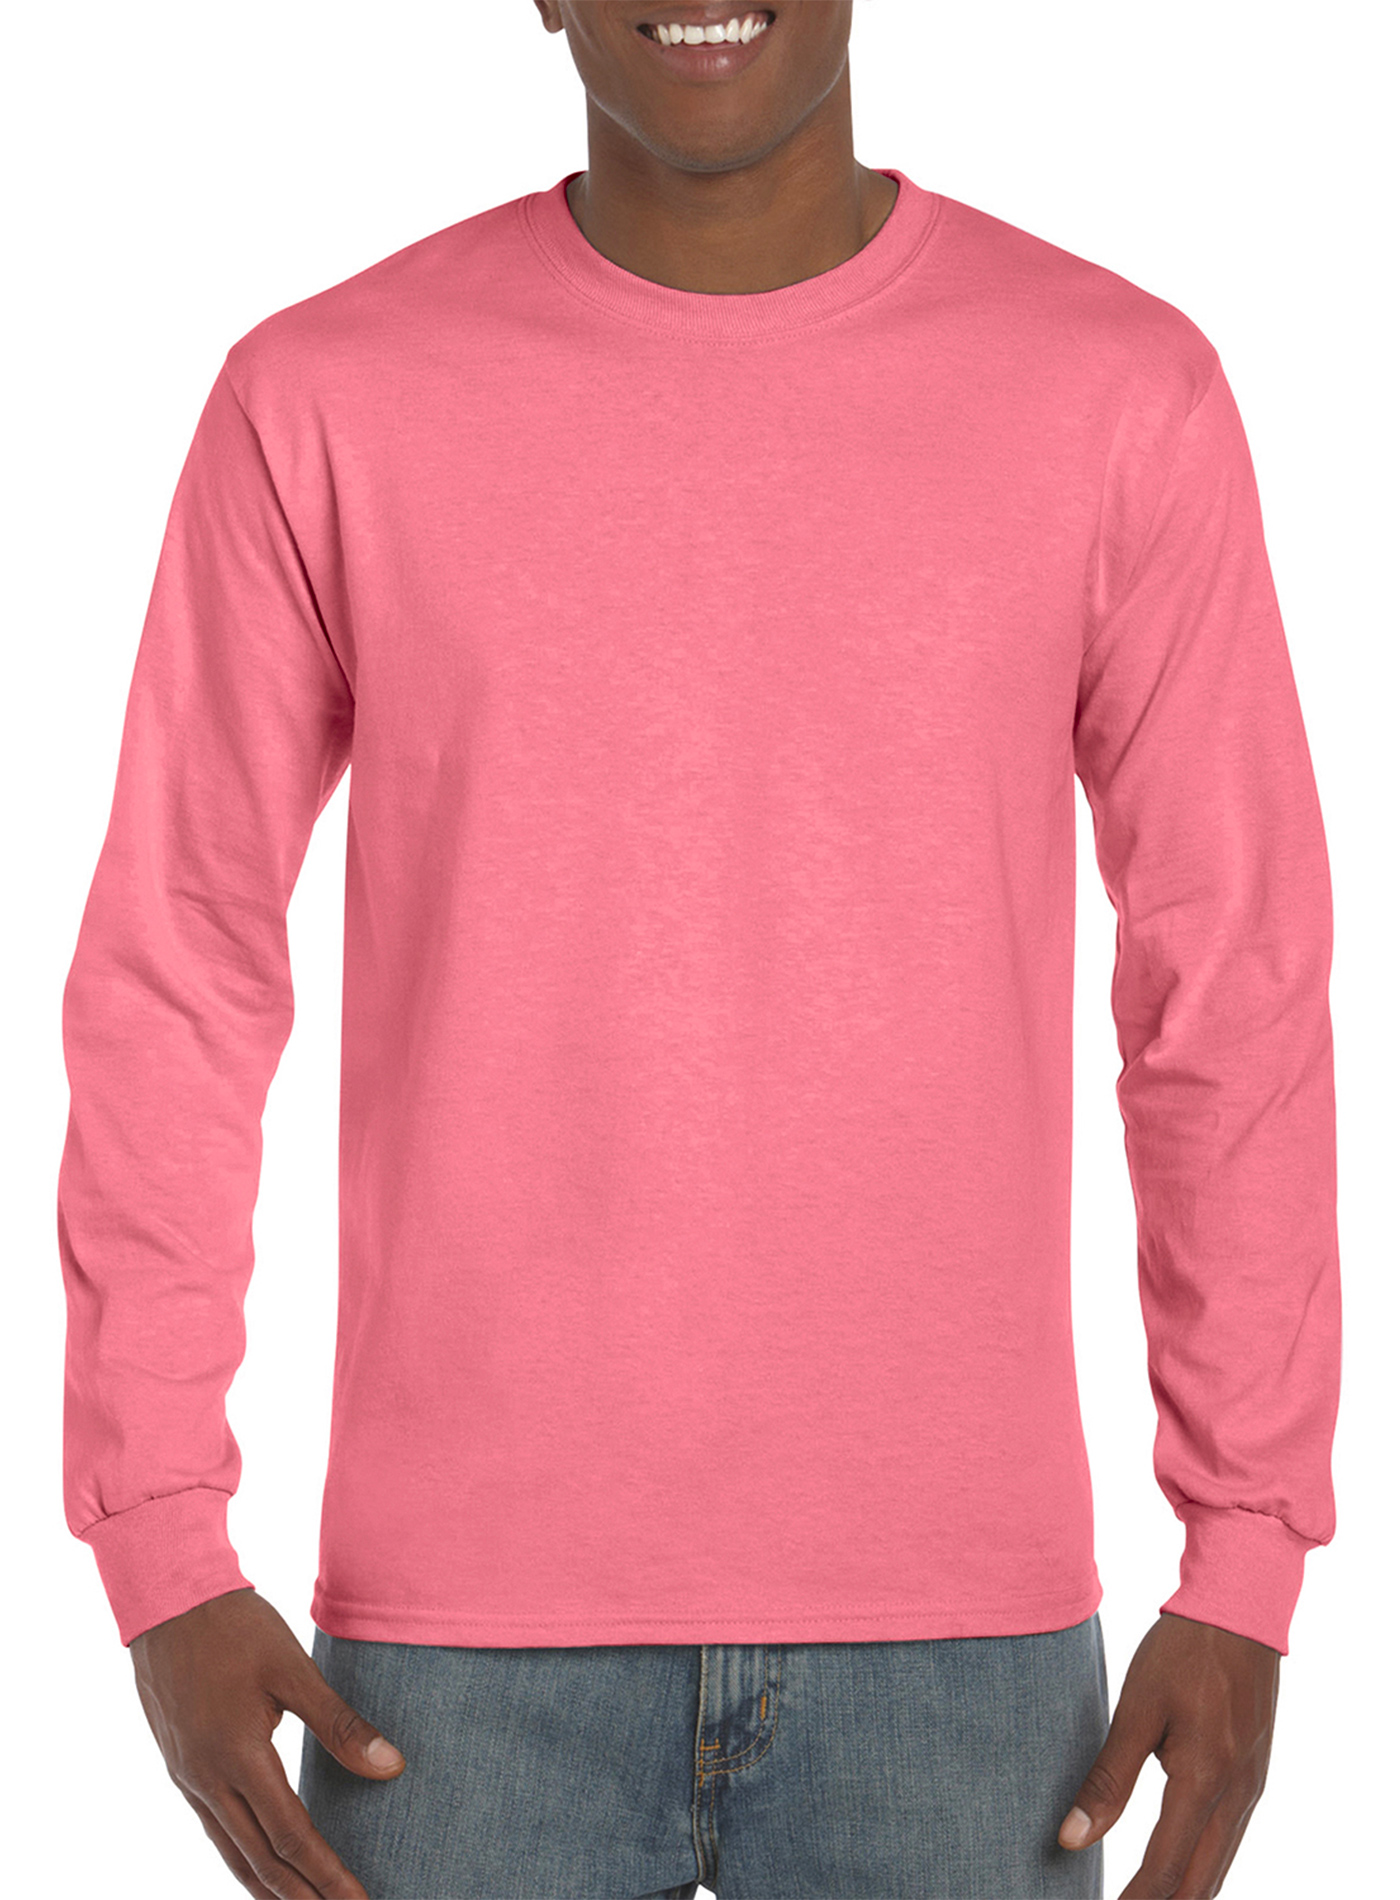 Pánské tričko s dlouhým rukávem Gildan Hammer - Zářivá růžová XL